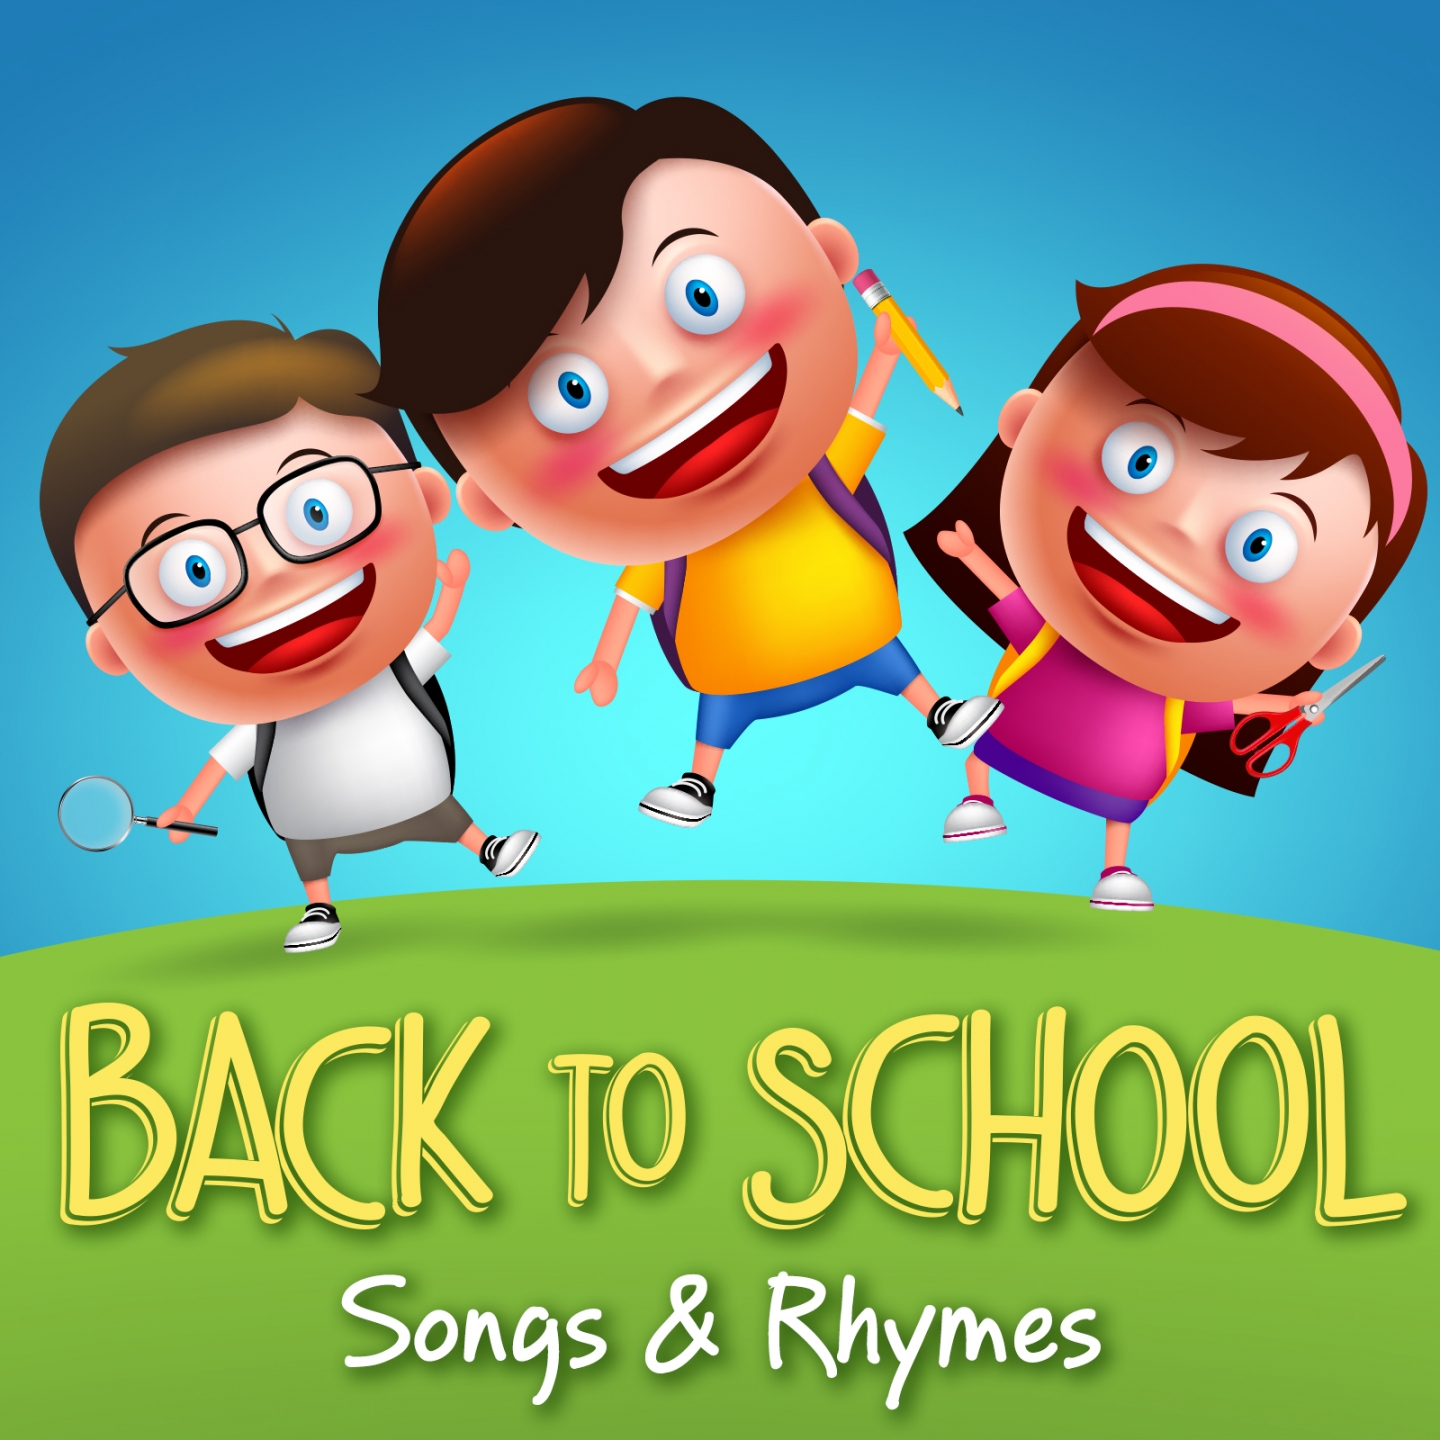 Back to School Songs & Rhymes